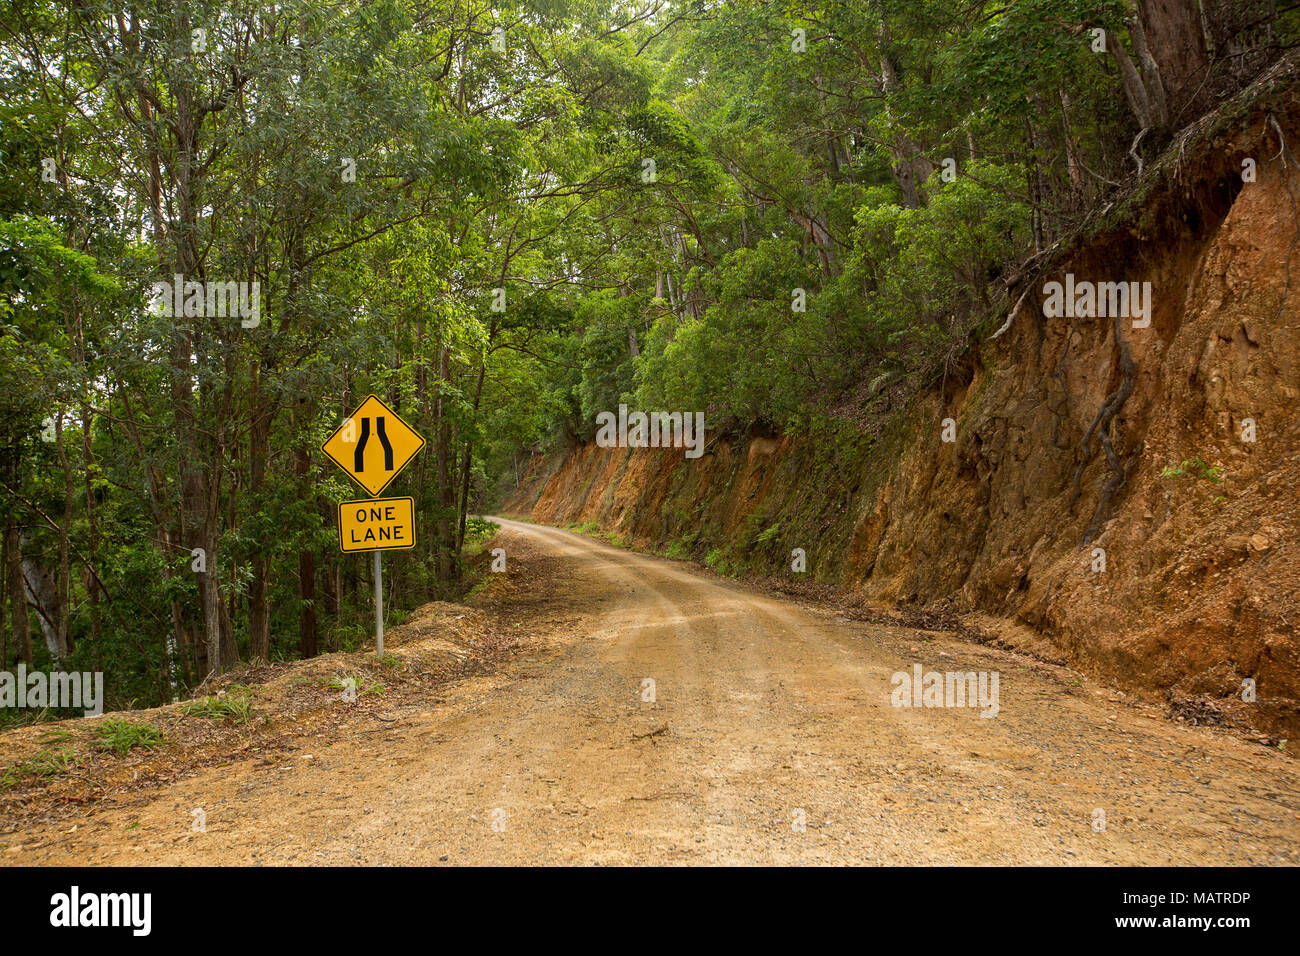 Chemin de terre étroit serpentant à travers du paysage forestier du Parc National de Conondale dans le Queensland en Australie Banque D'Images